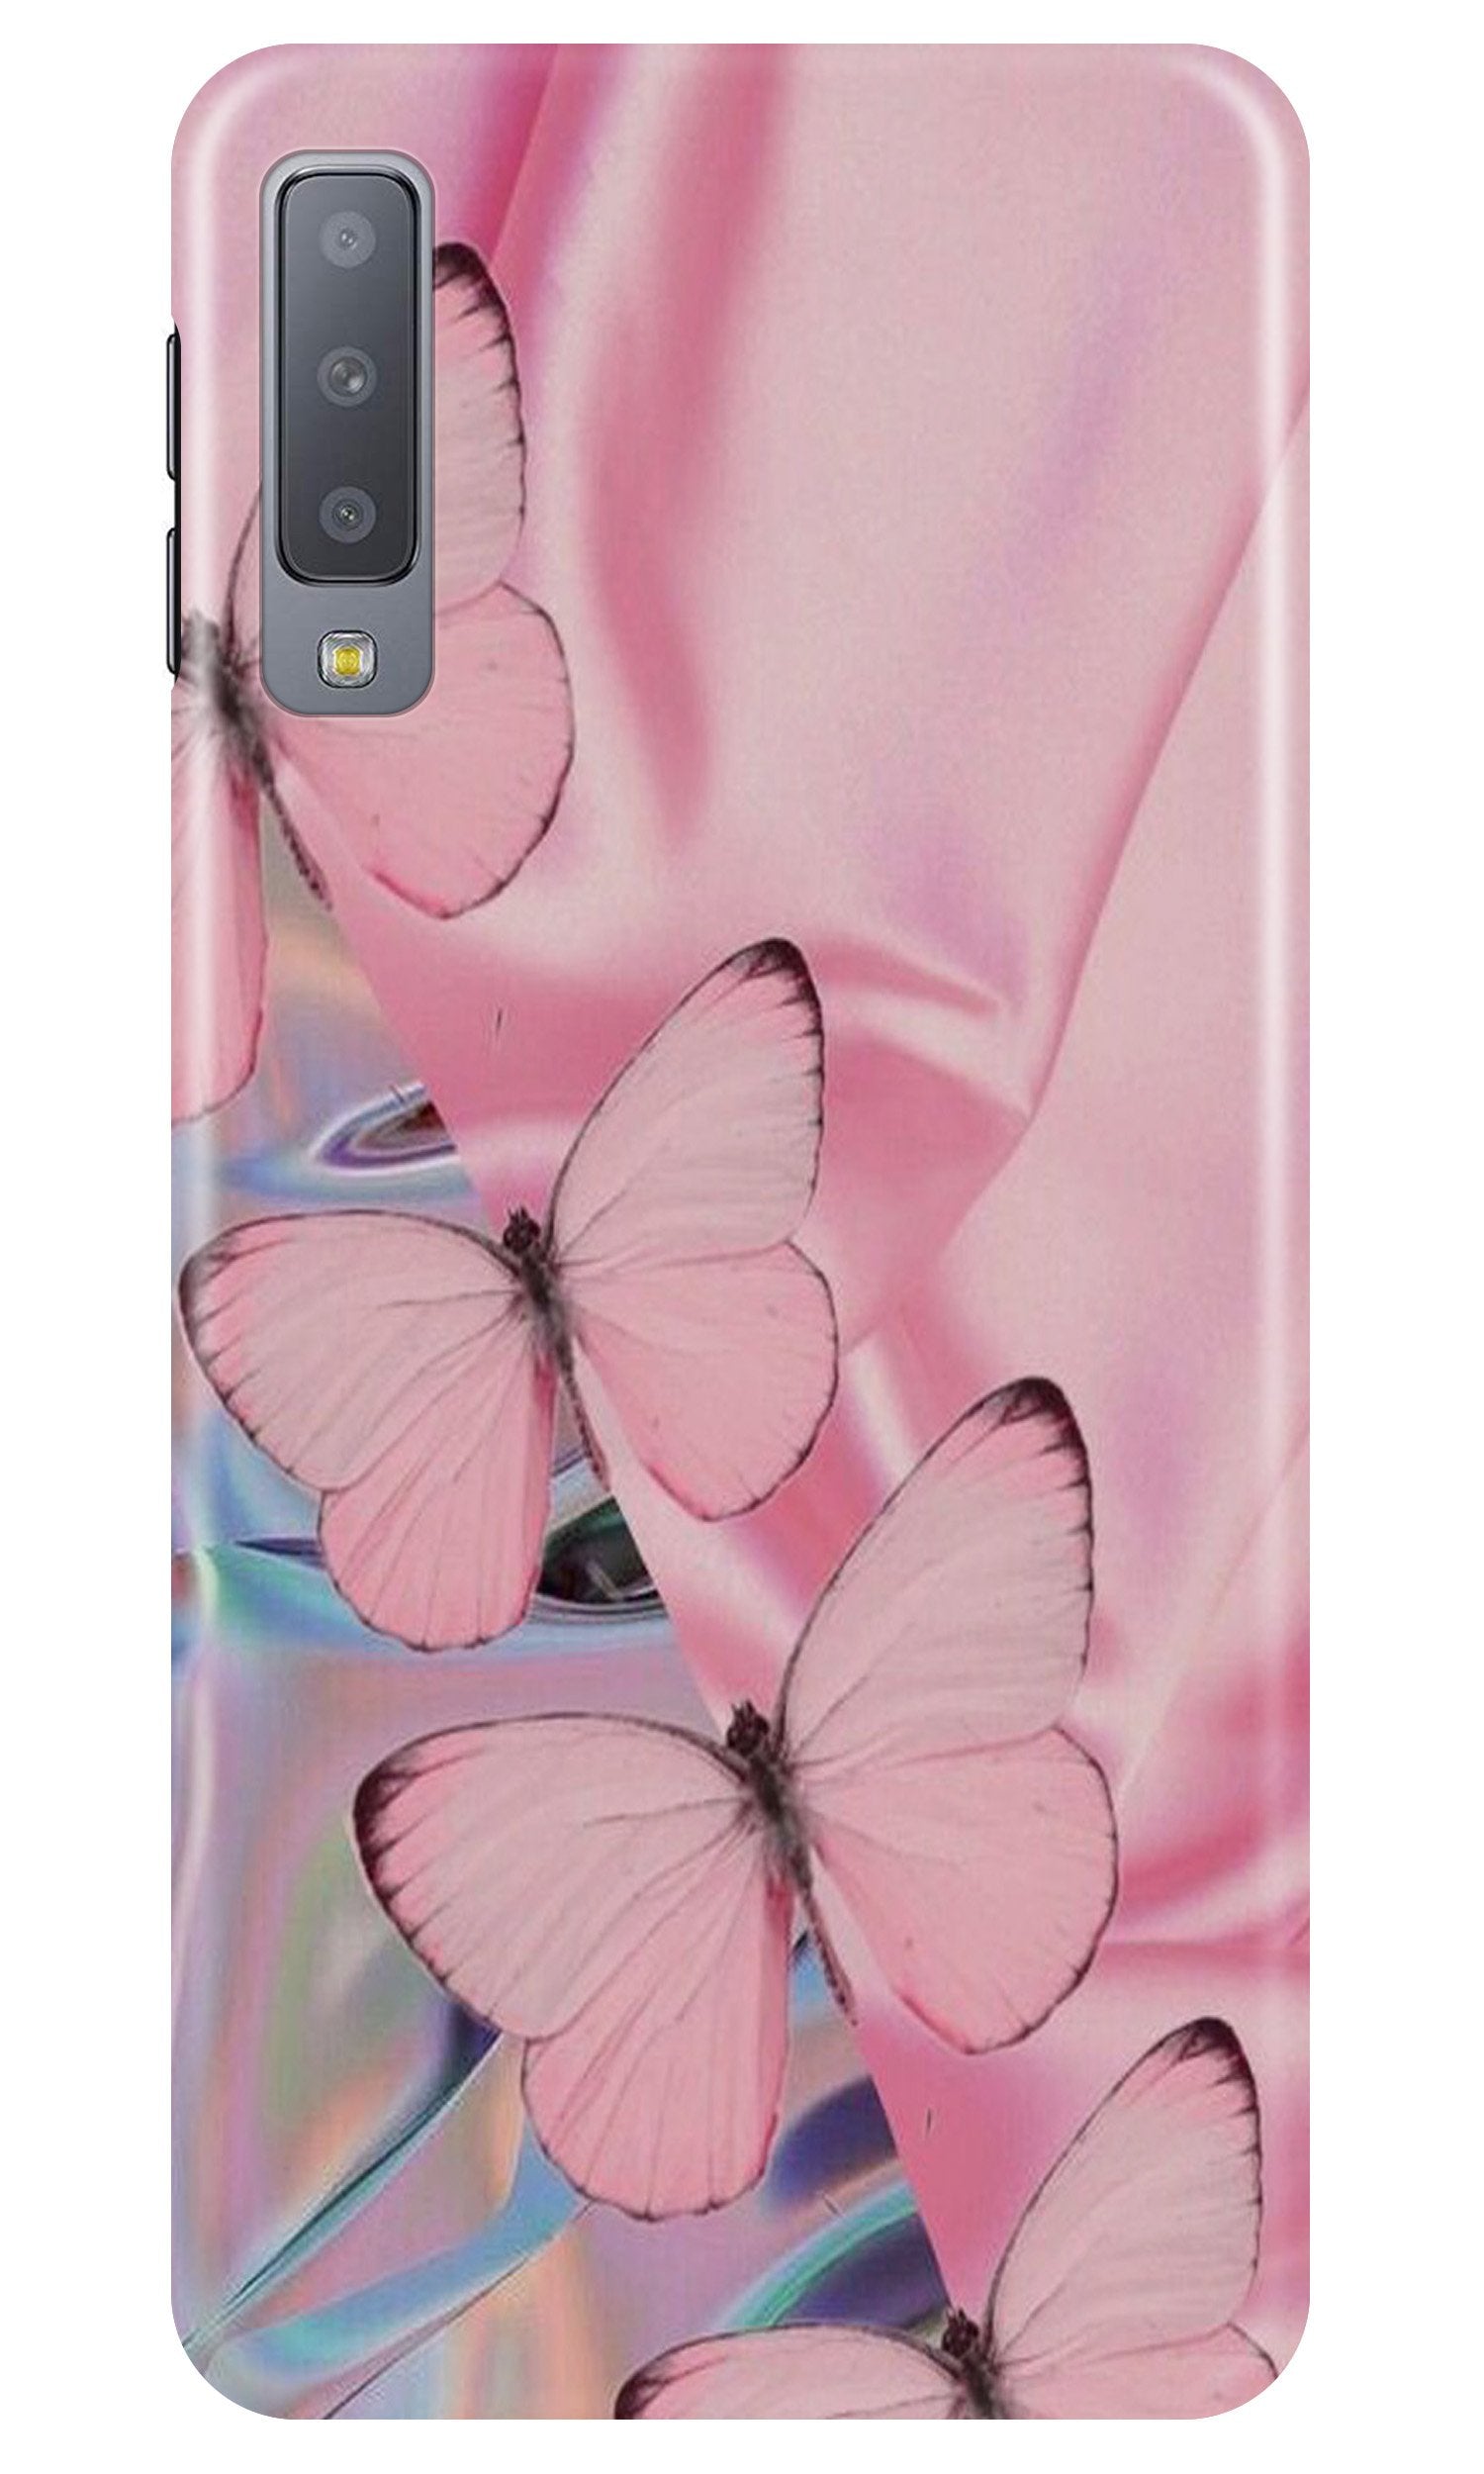 Butterflies Case for Samsung Galaxy A50s